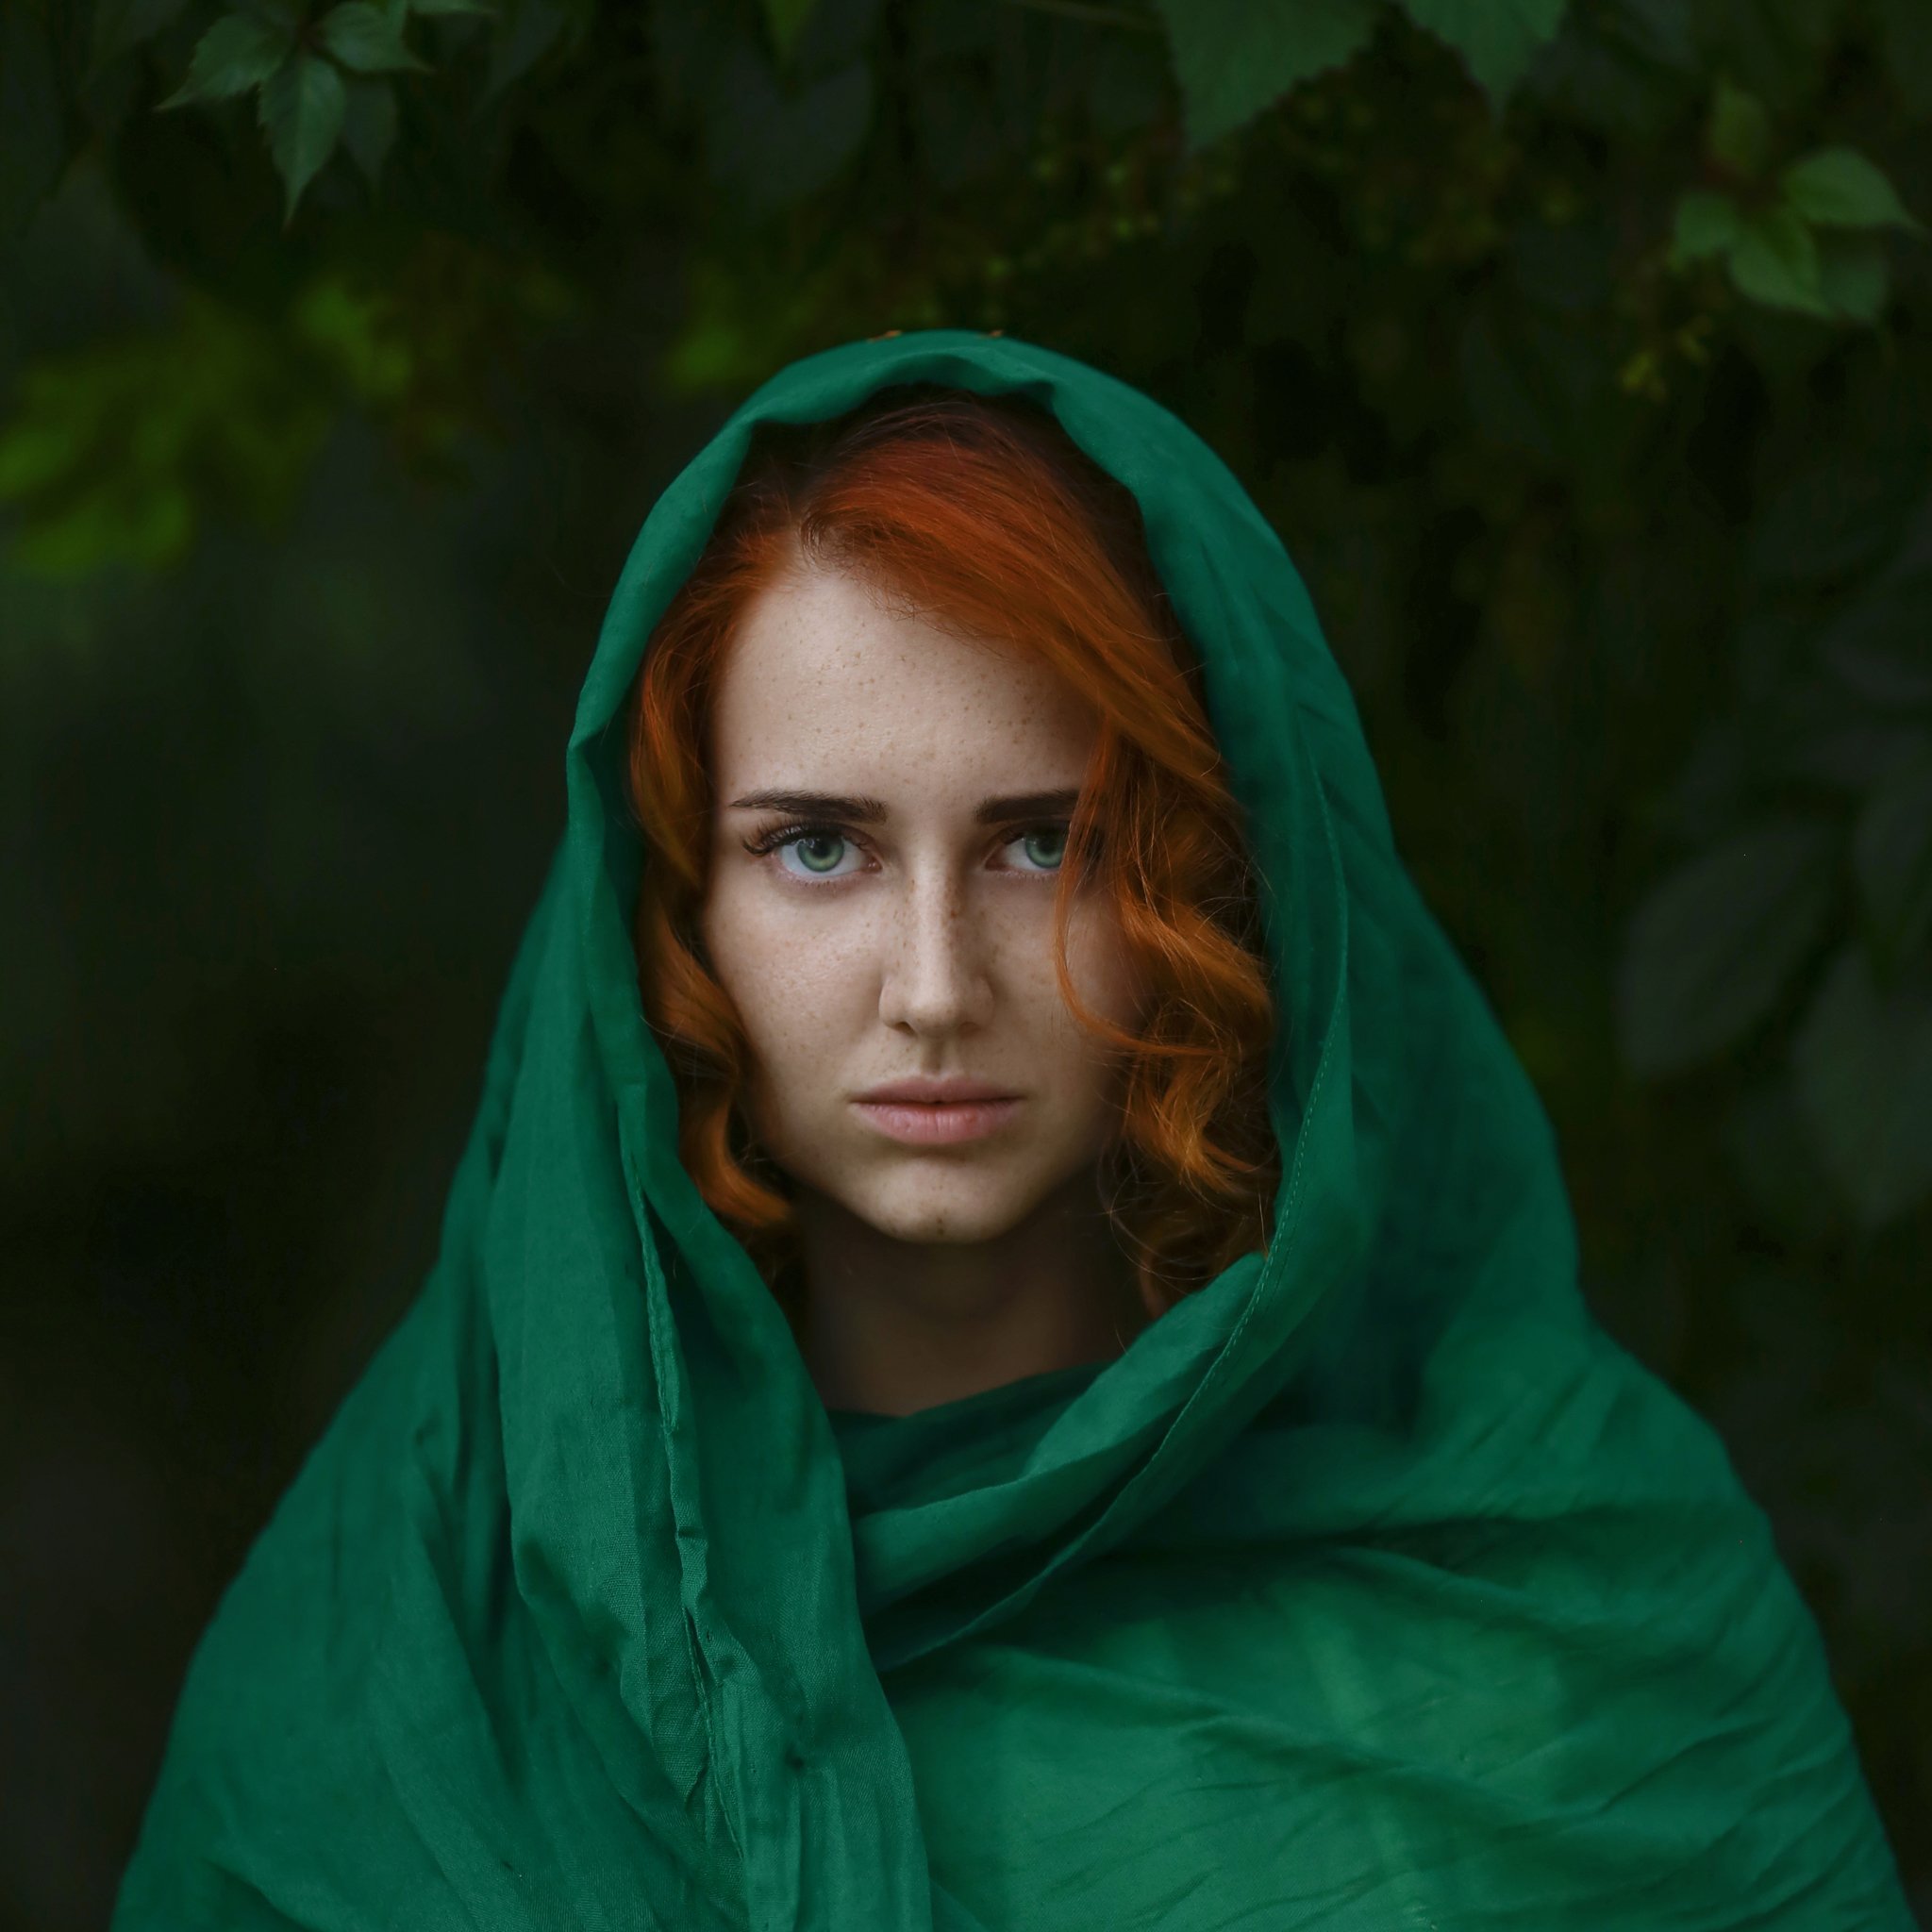 ражая, рыжая девушка, конопушки, веснушки, зеленые глаза, рыжая девушка в зеленом платке, рыжий с зеленым, Ирина Голубятникова